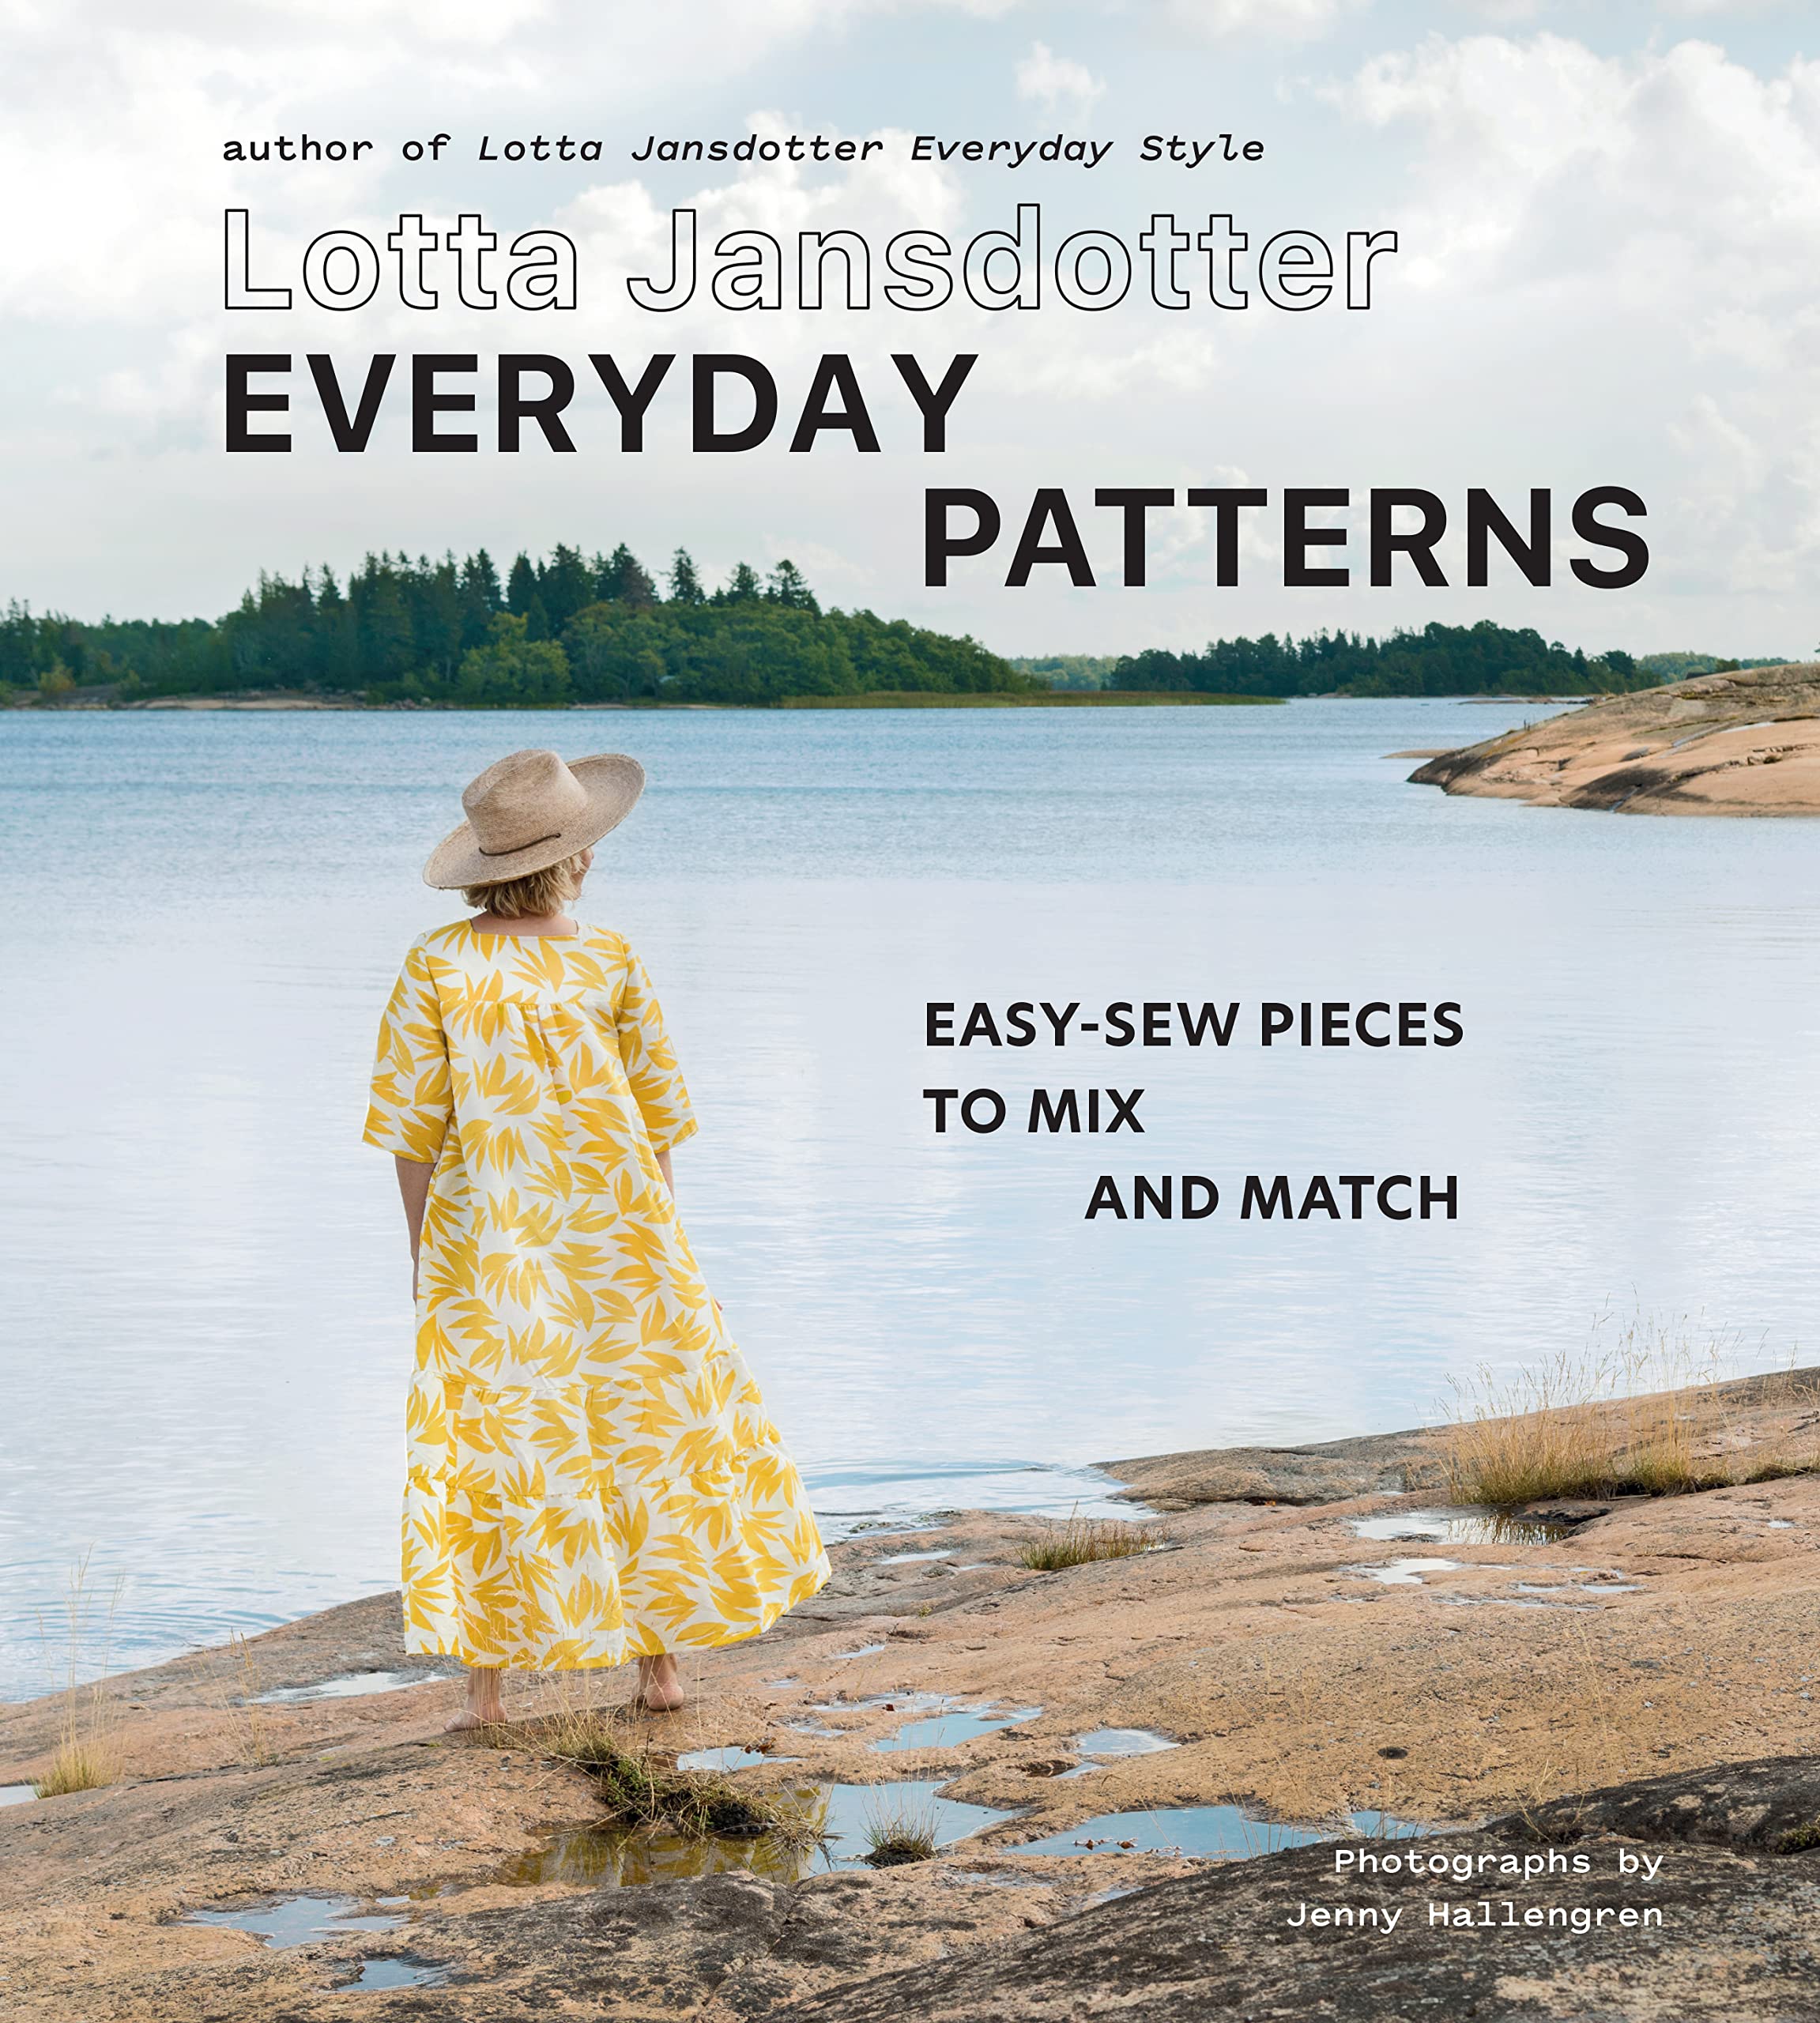 Everyday Patterns by Lotta Jansdotter